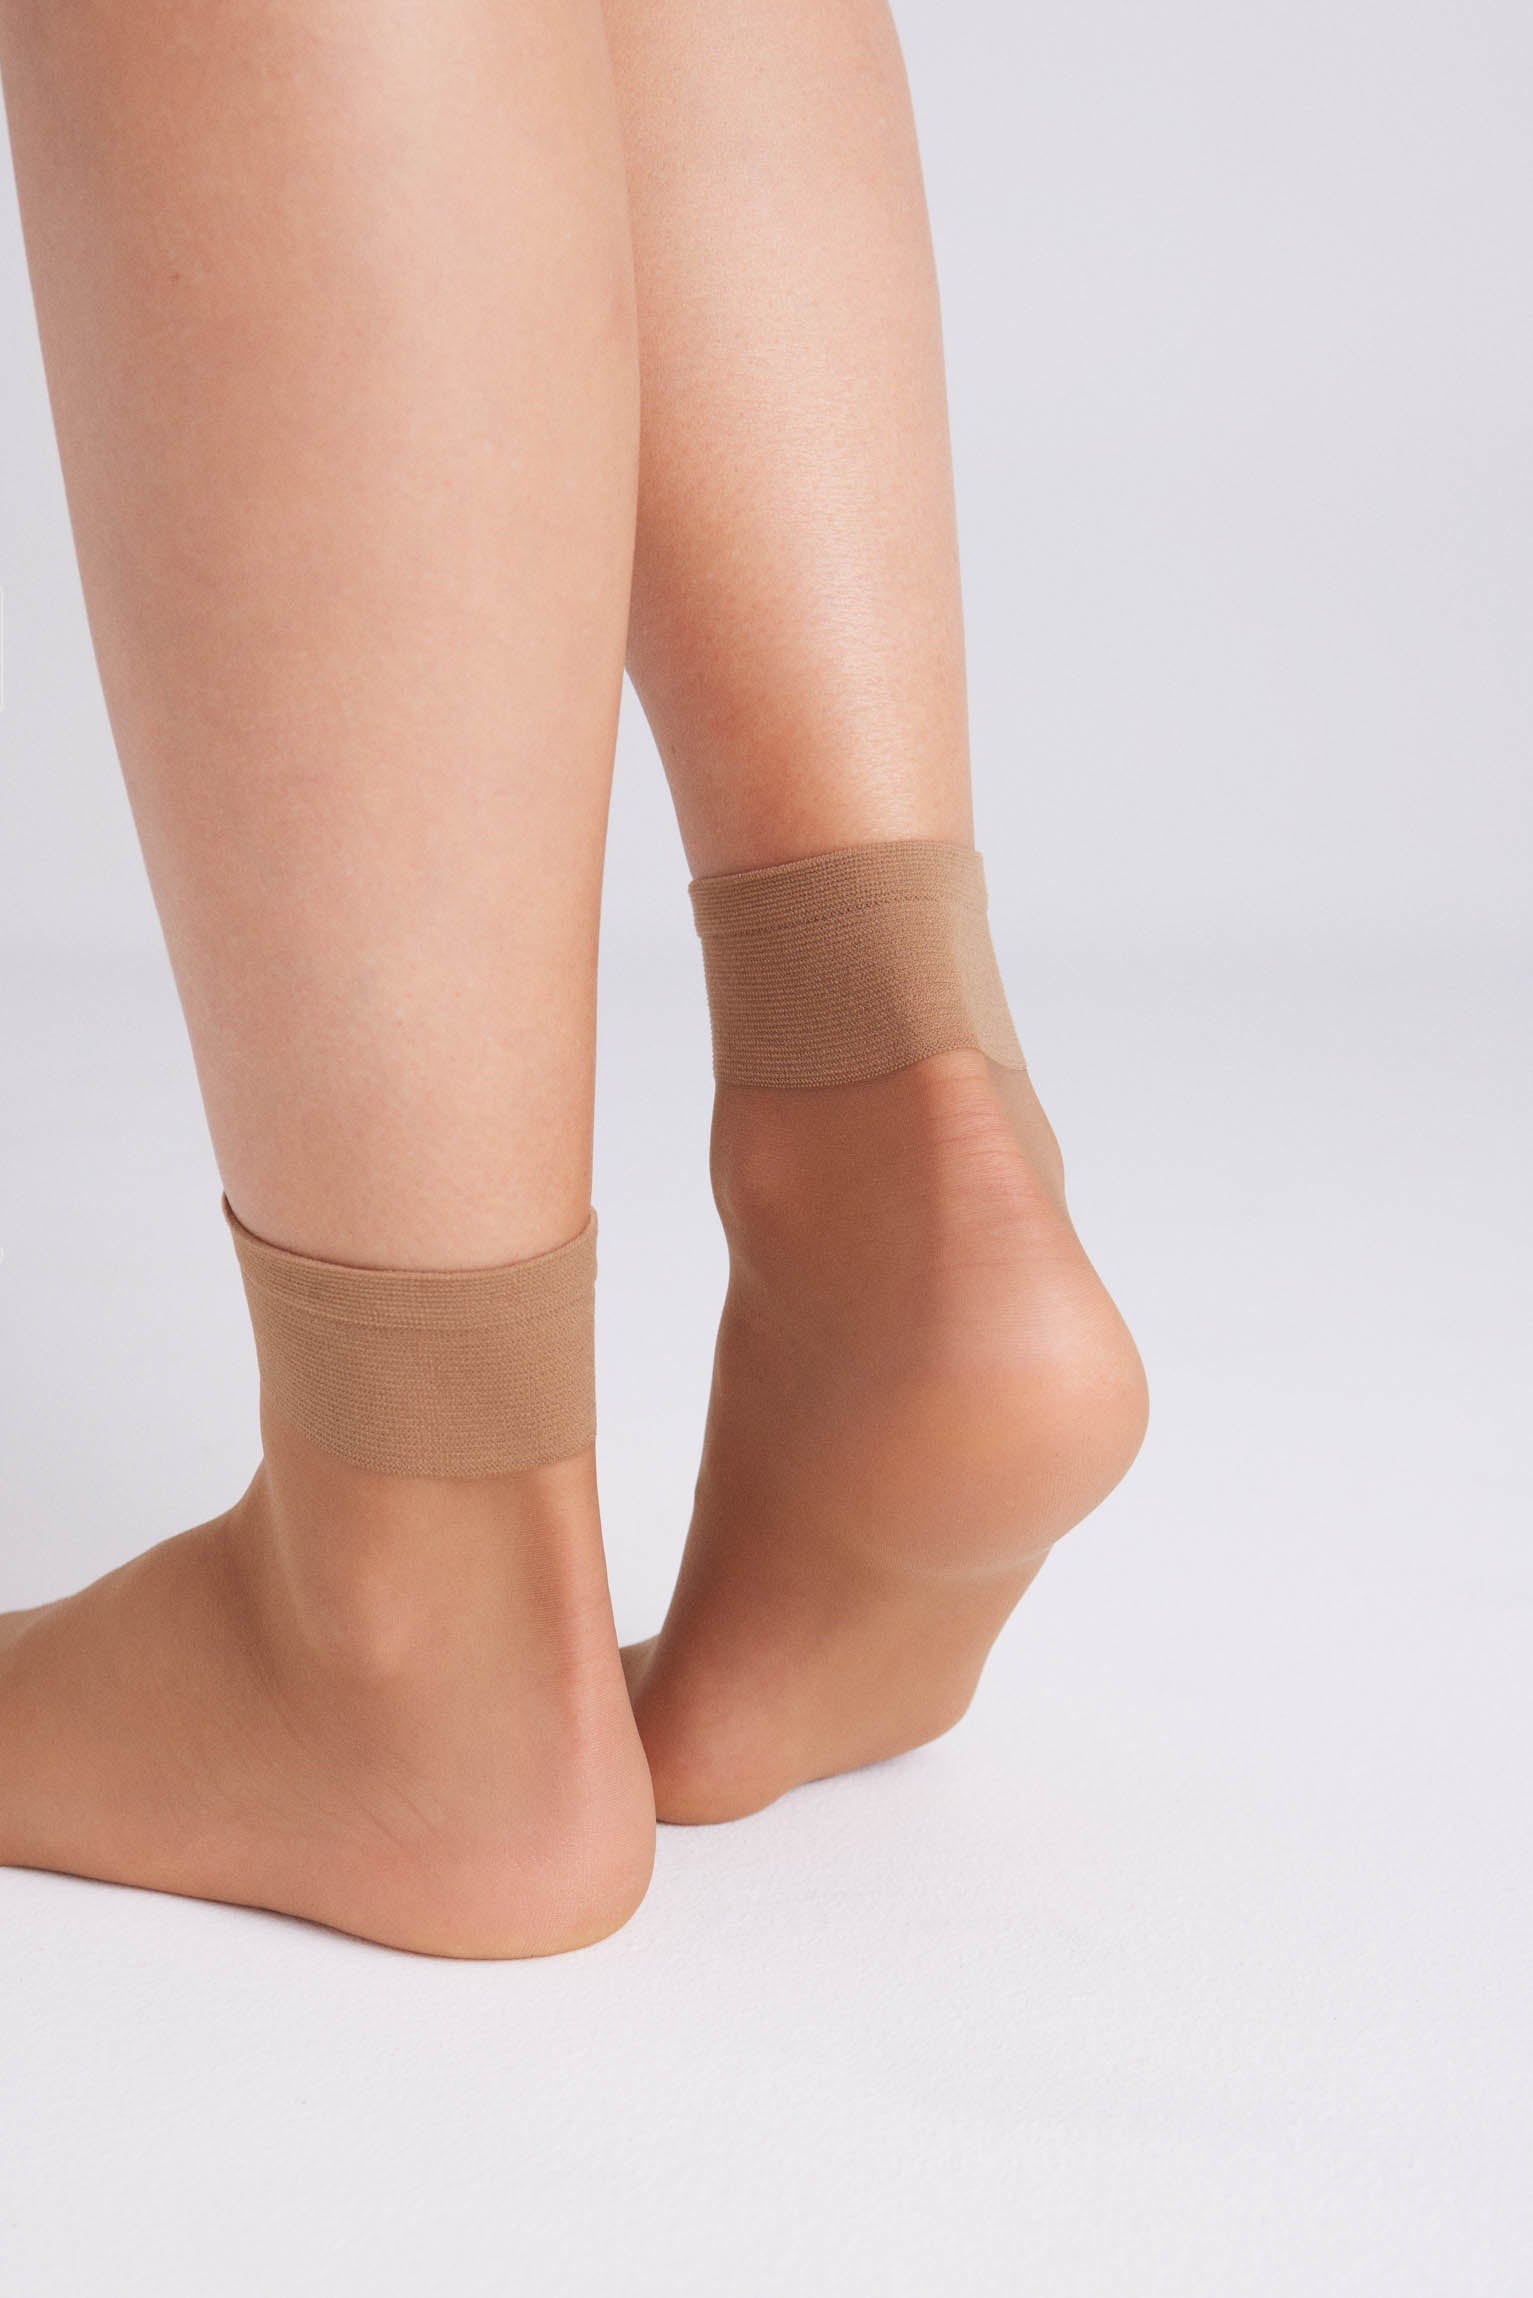 Calcetines tobilleros modal antipresión puño rulo para mujer BLANCO